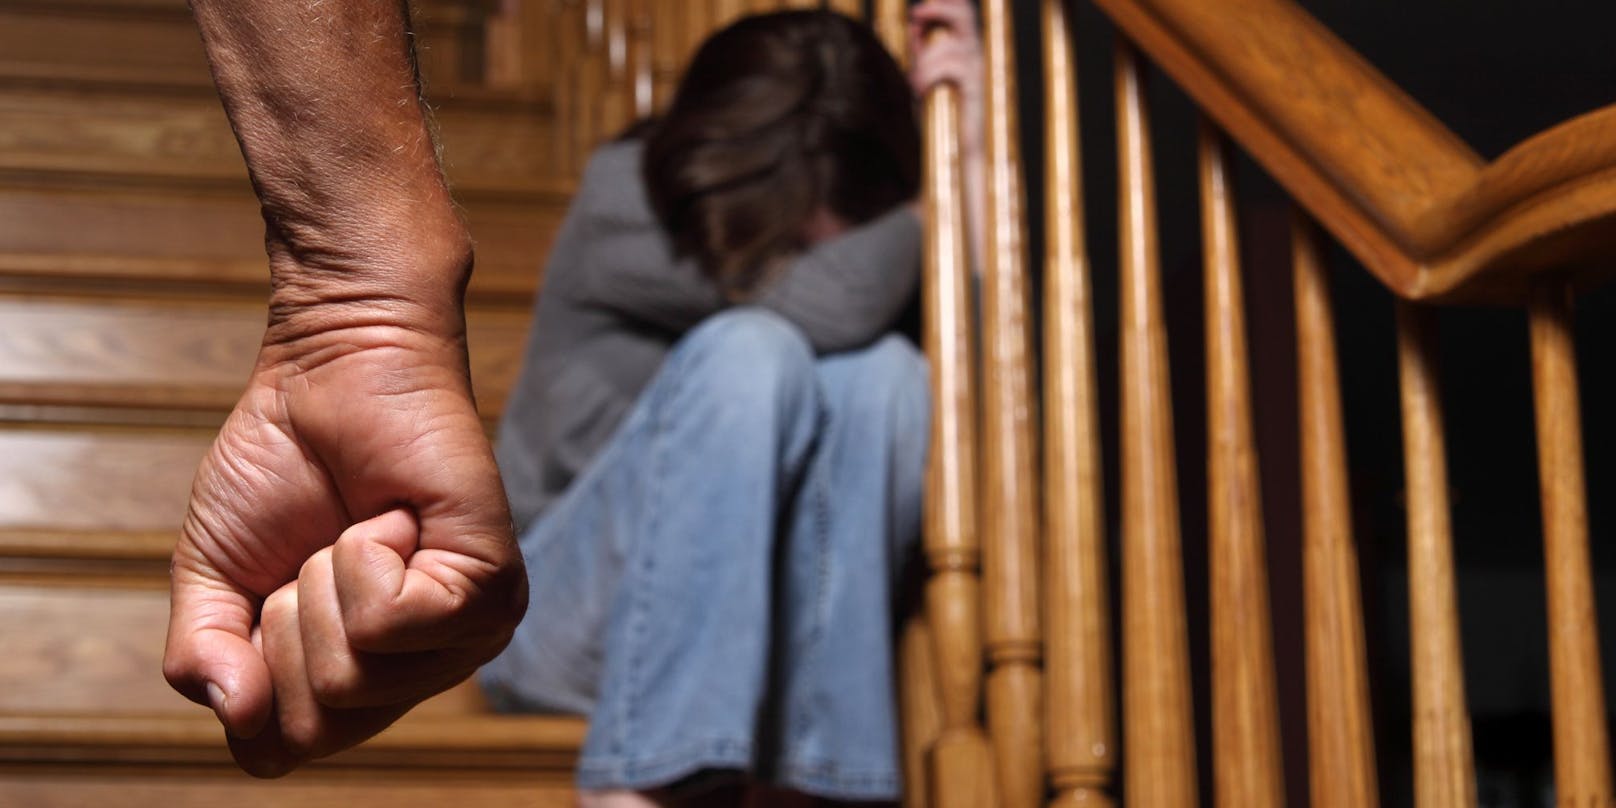 Seit der Pandemie steigen die weltweiten Statistiken von häuslicher Gewalt